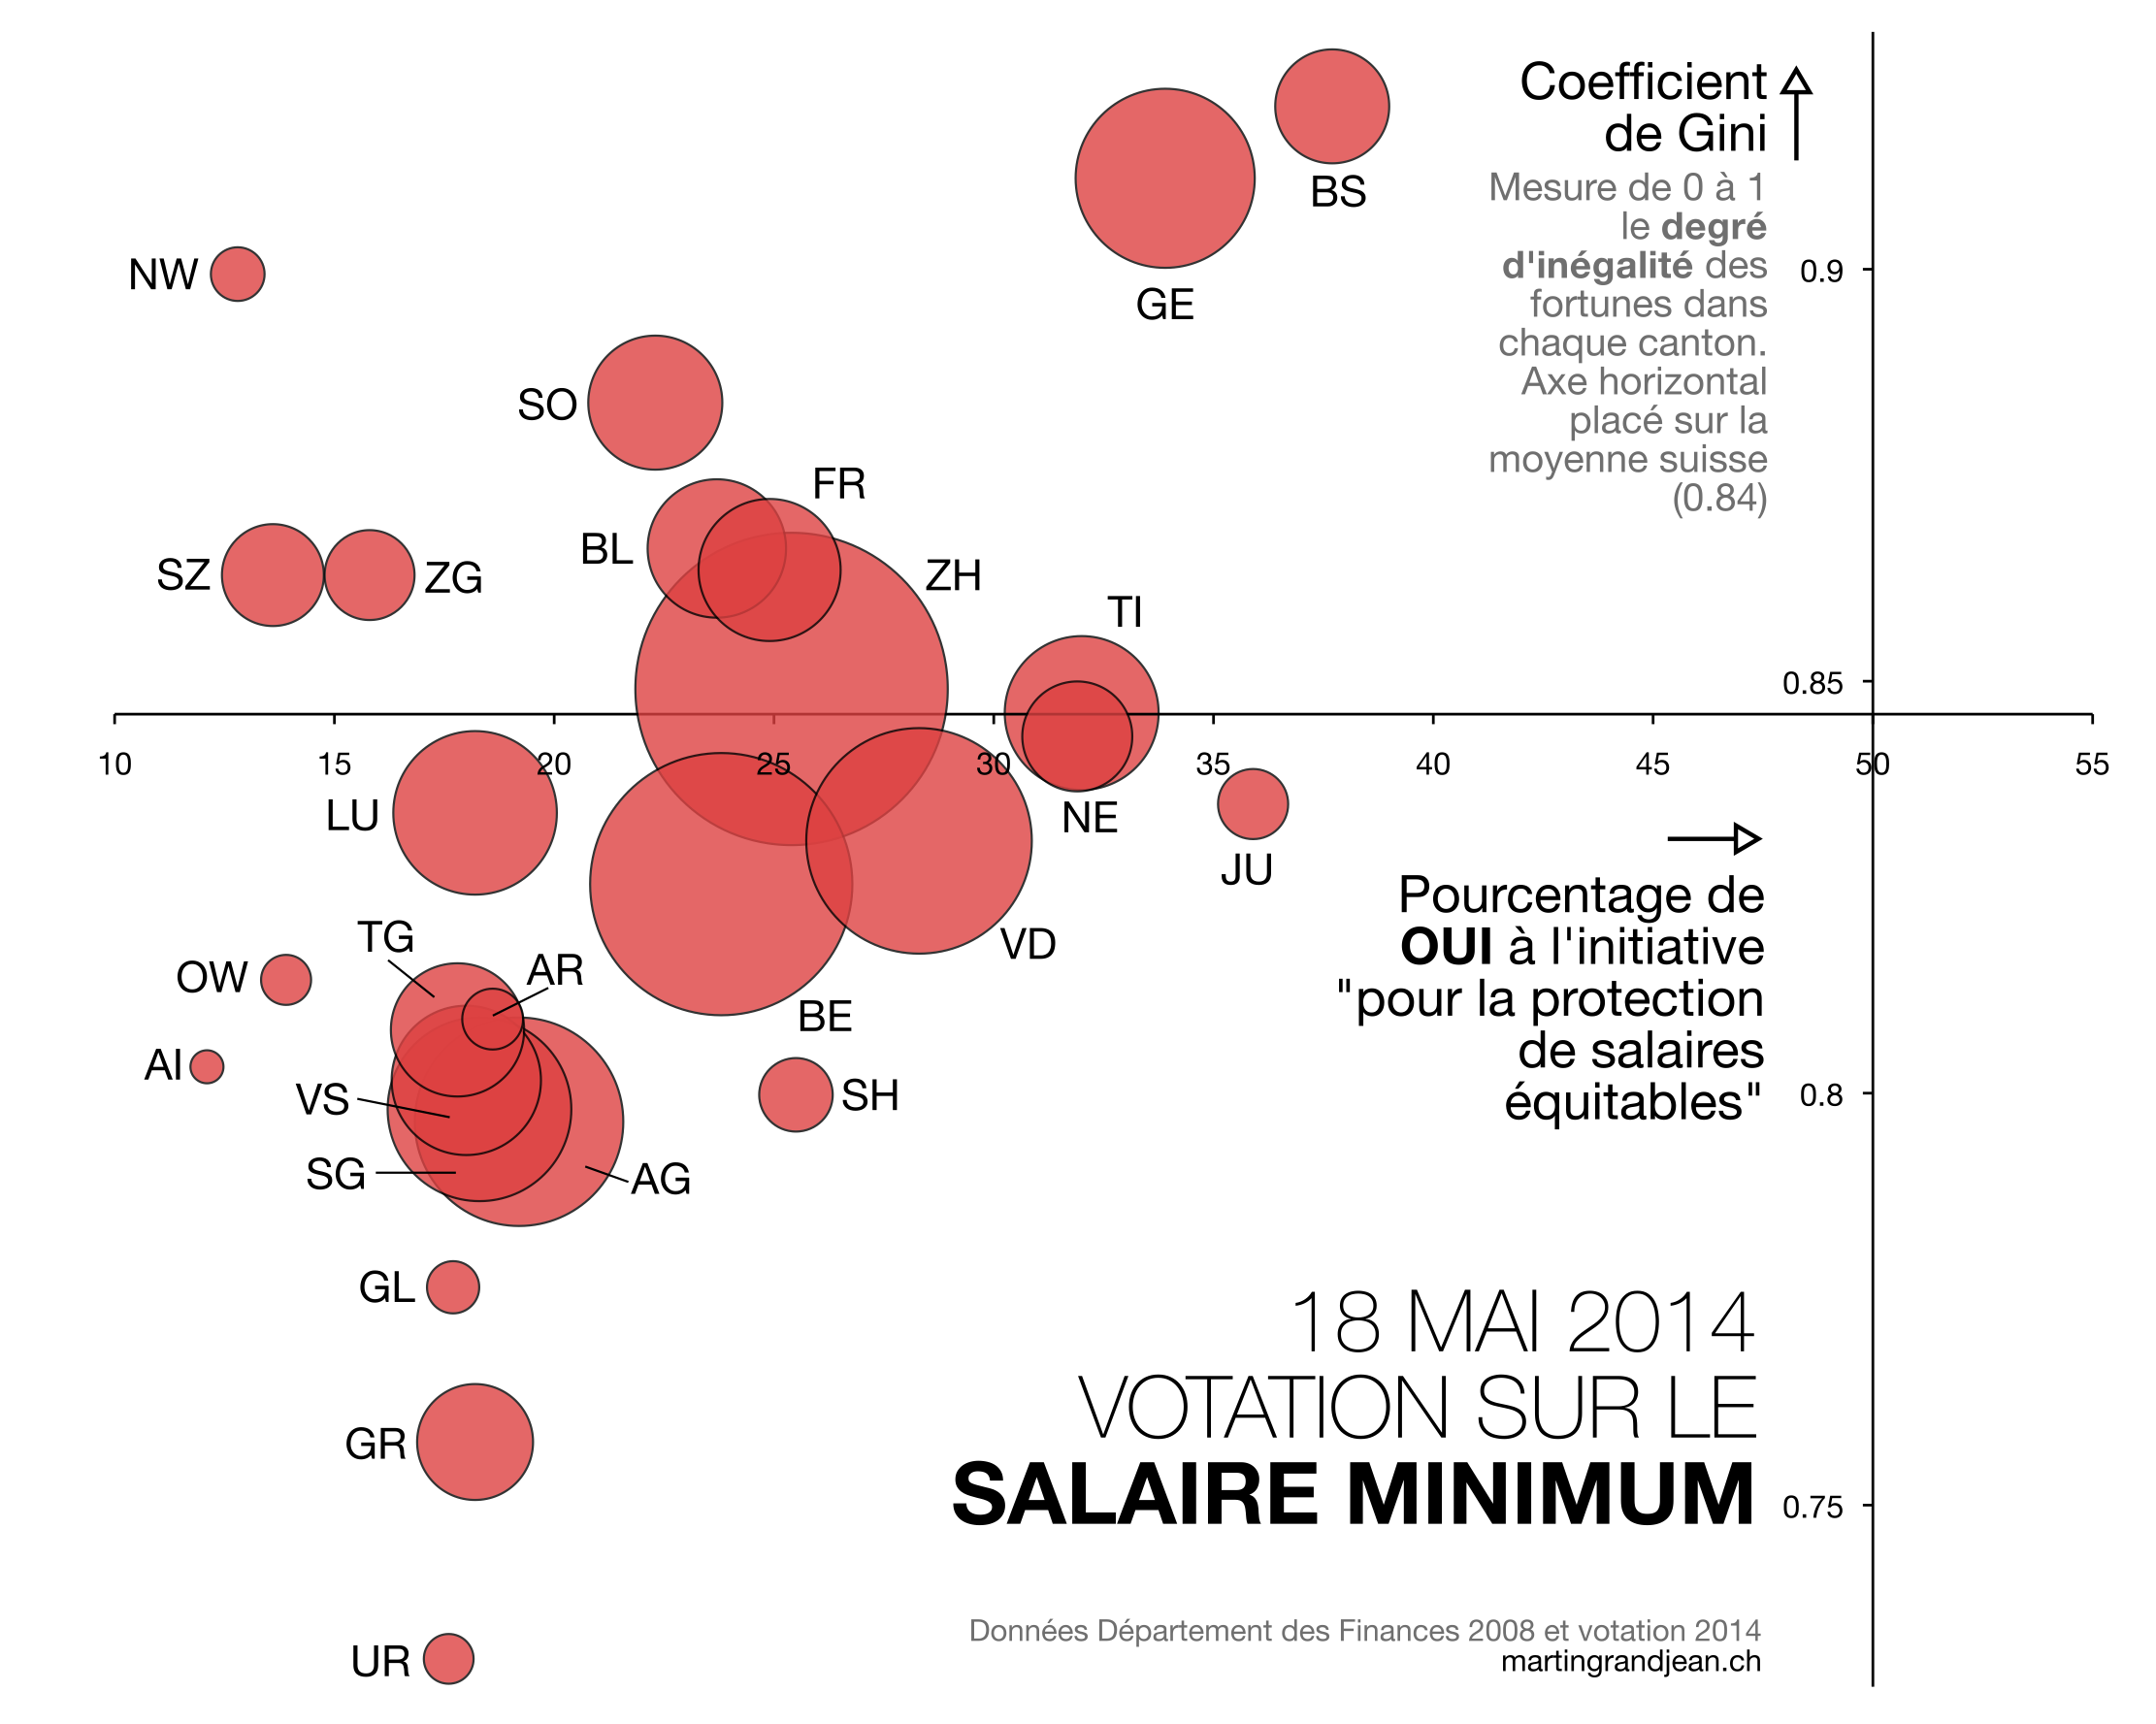 [Votation en graphique] Inégalités et salaire minimum